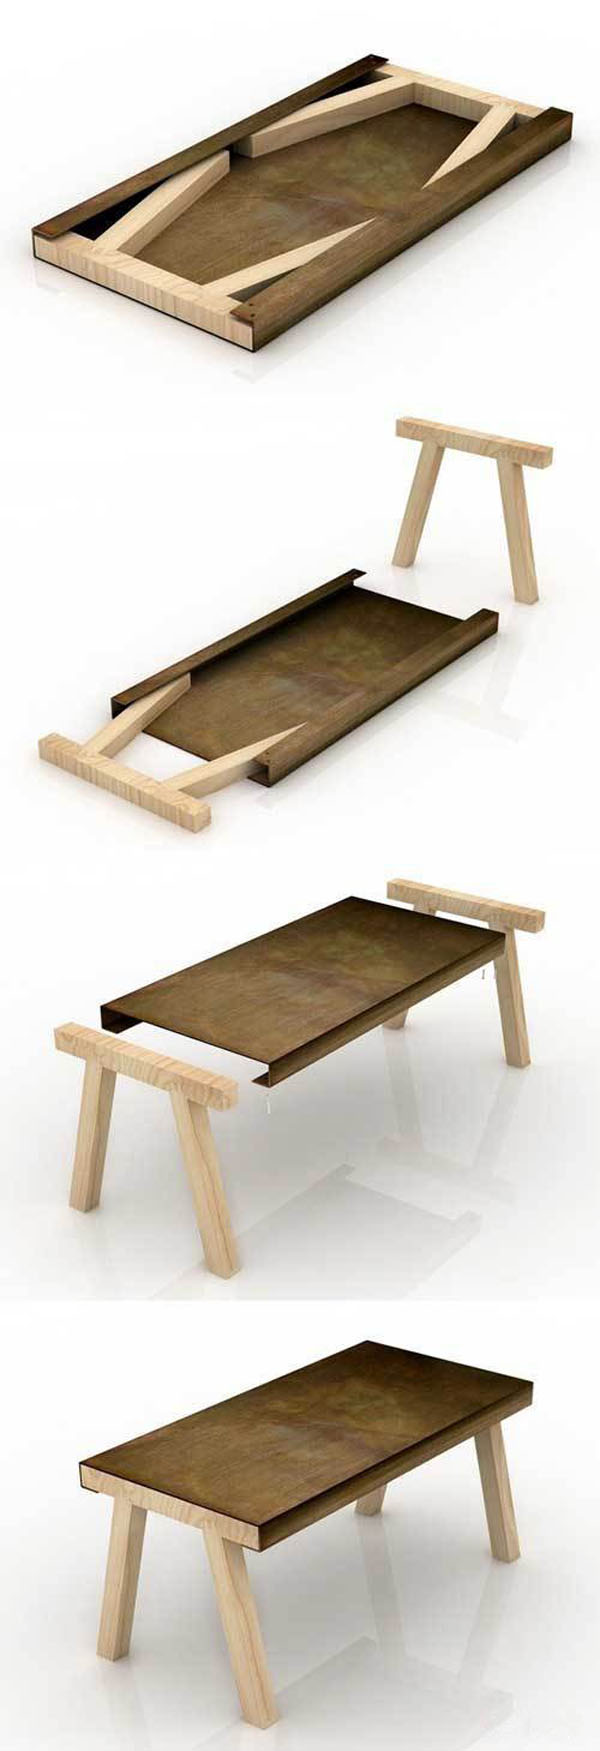 木桌11